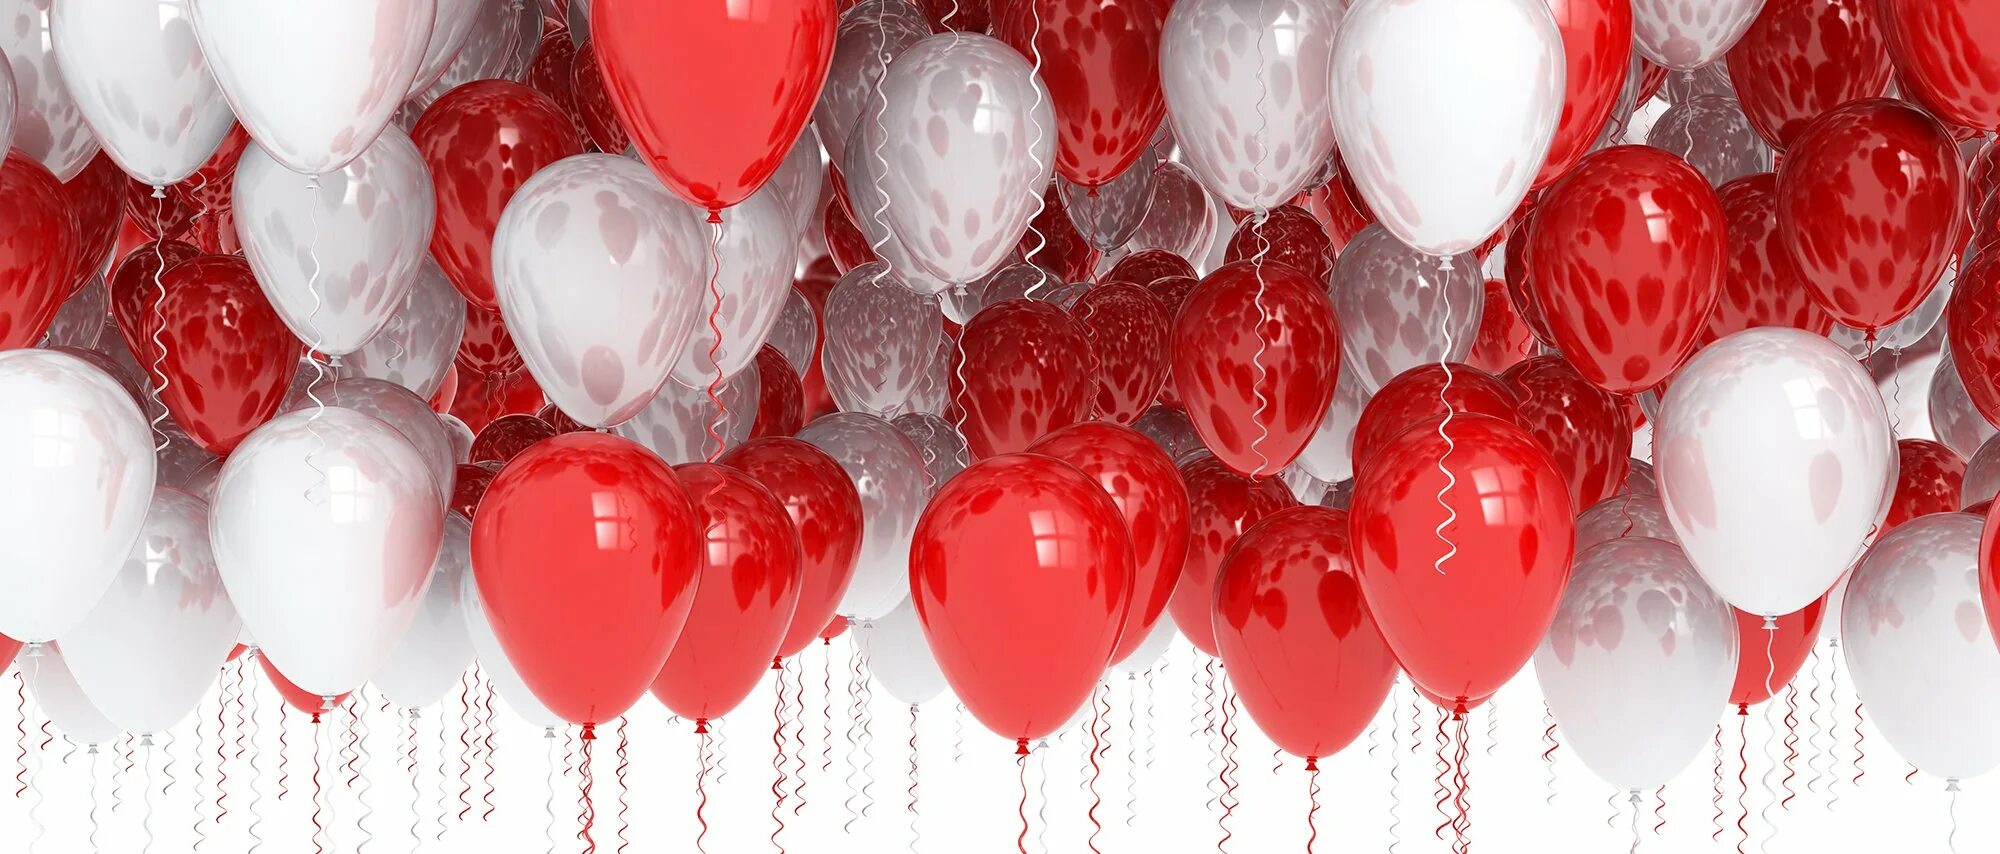 Видео красных шаров. Красные шары. Красно белые шары. Красный воздушный шарик. Красные шары на белом фоне.